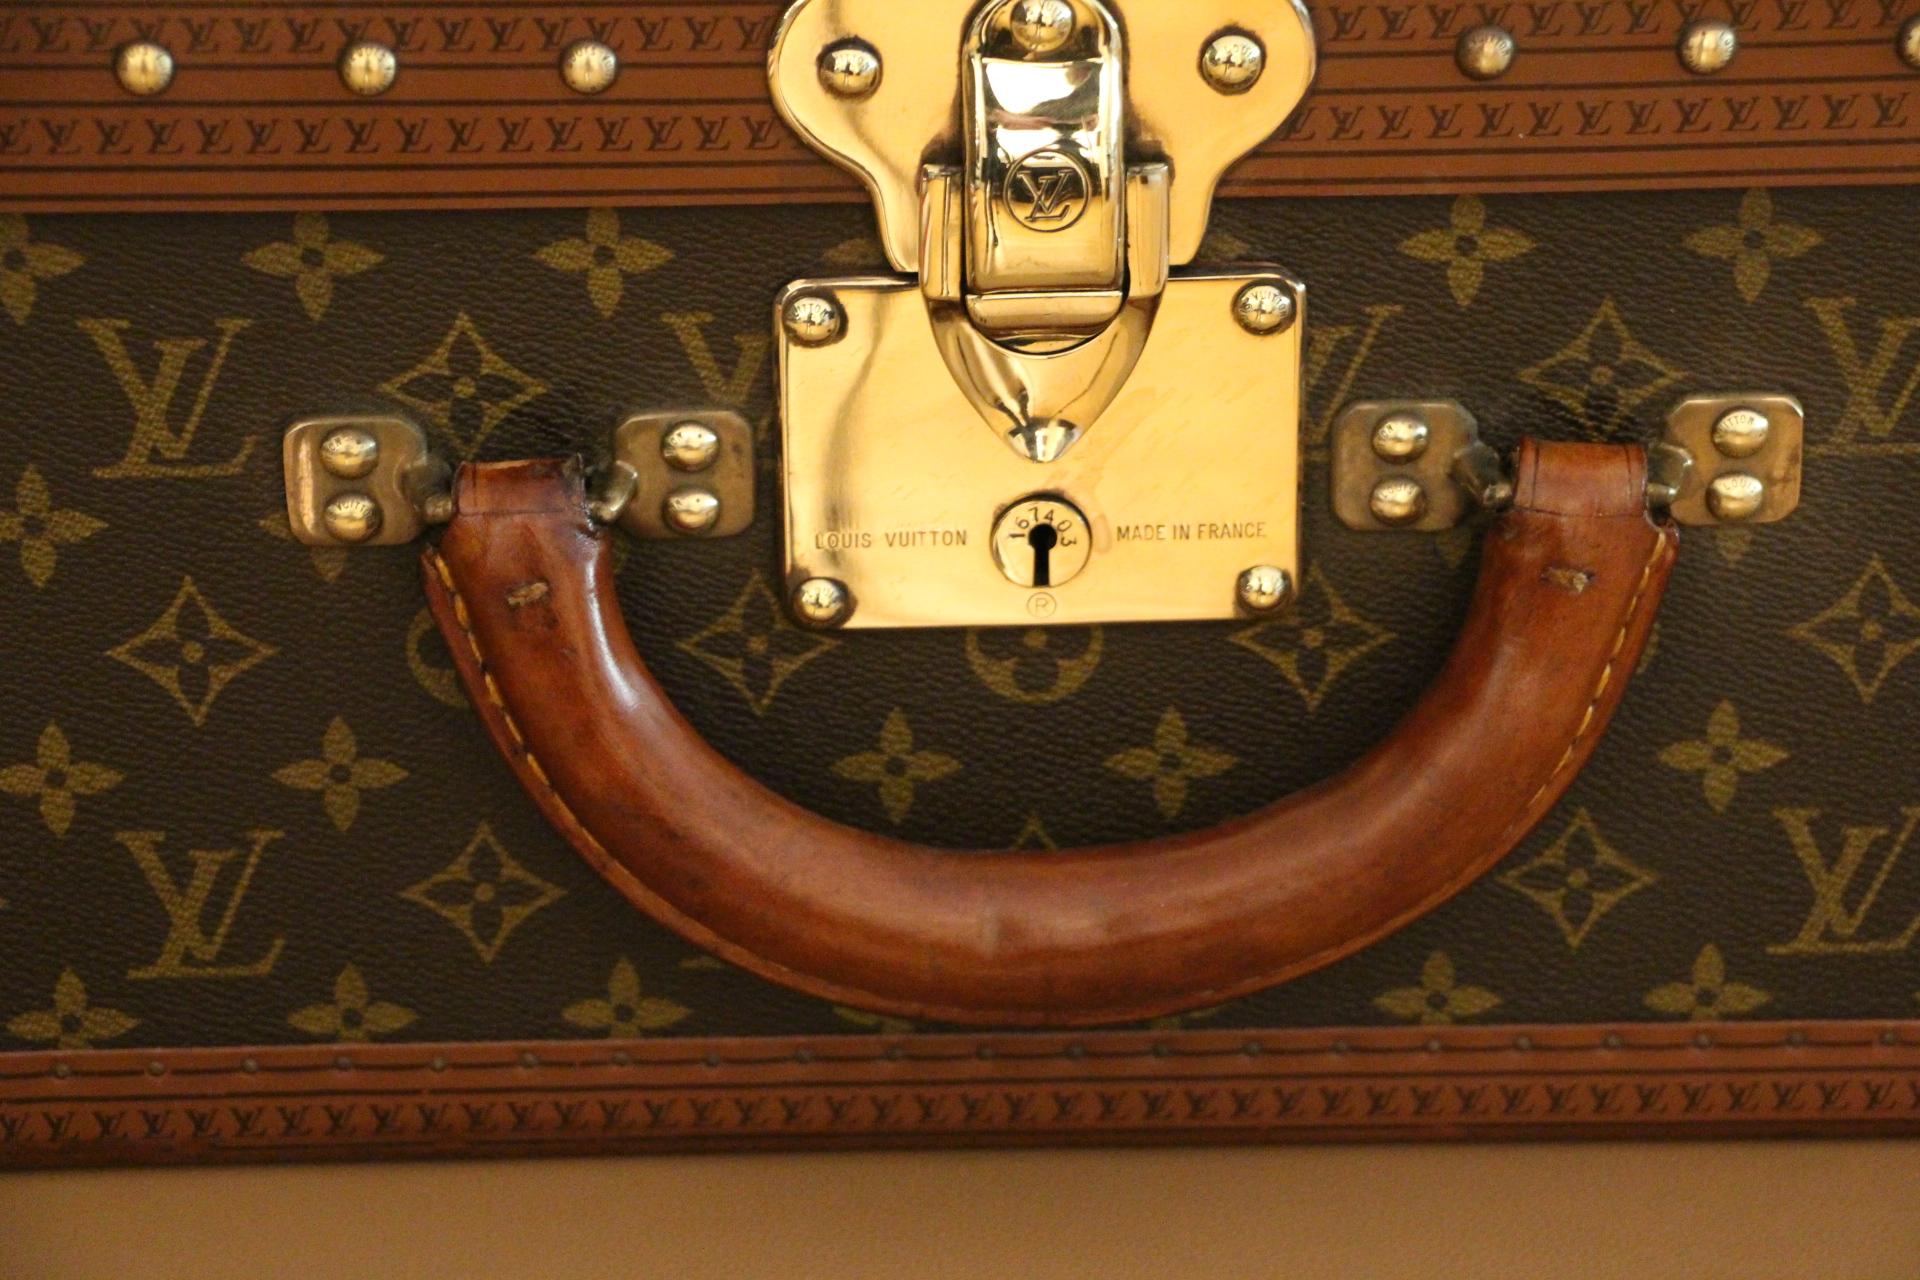  Louis Vuitton Suitcase, Alzer 70 Louis Vuitton Suitcase, Large Vuitton Suitcase 1